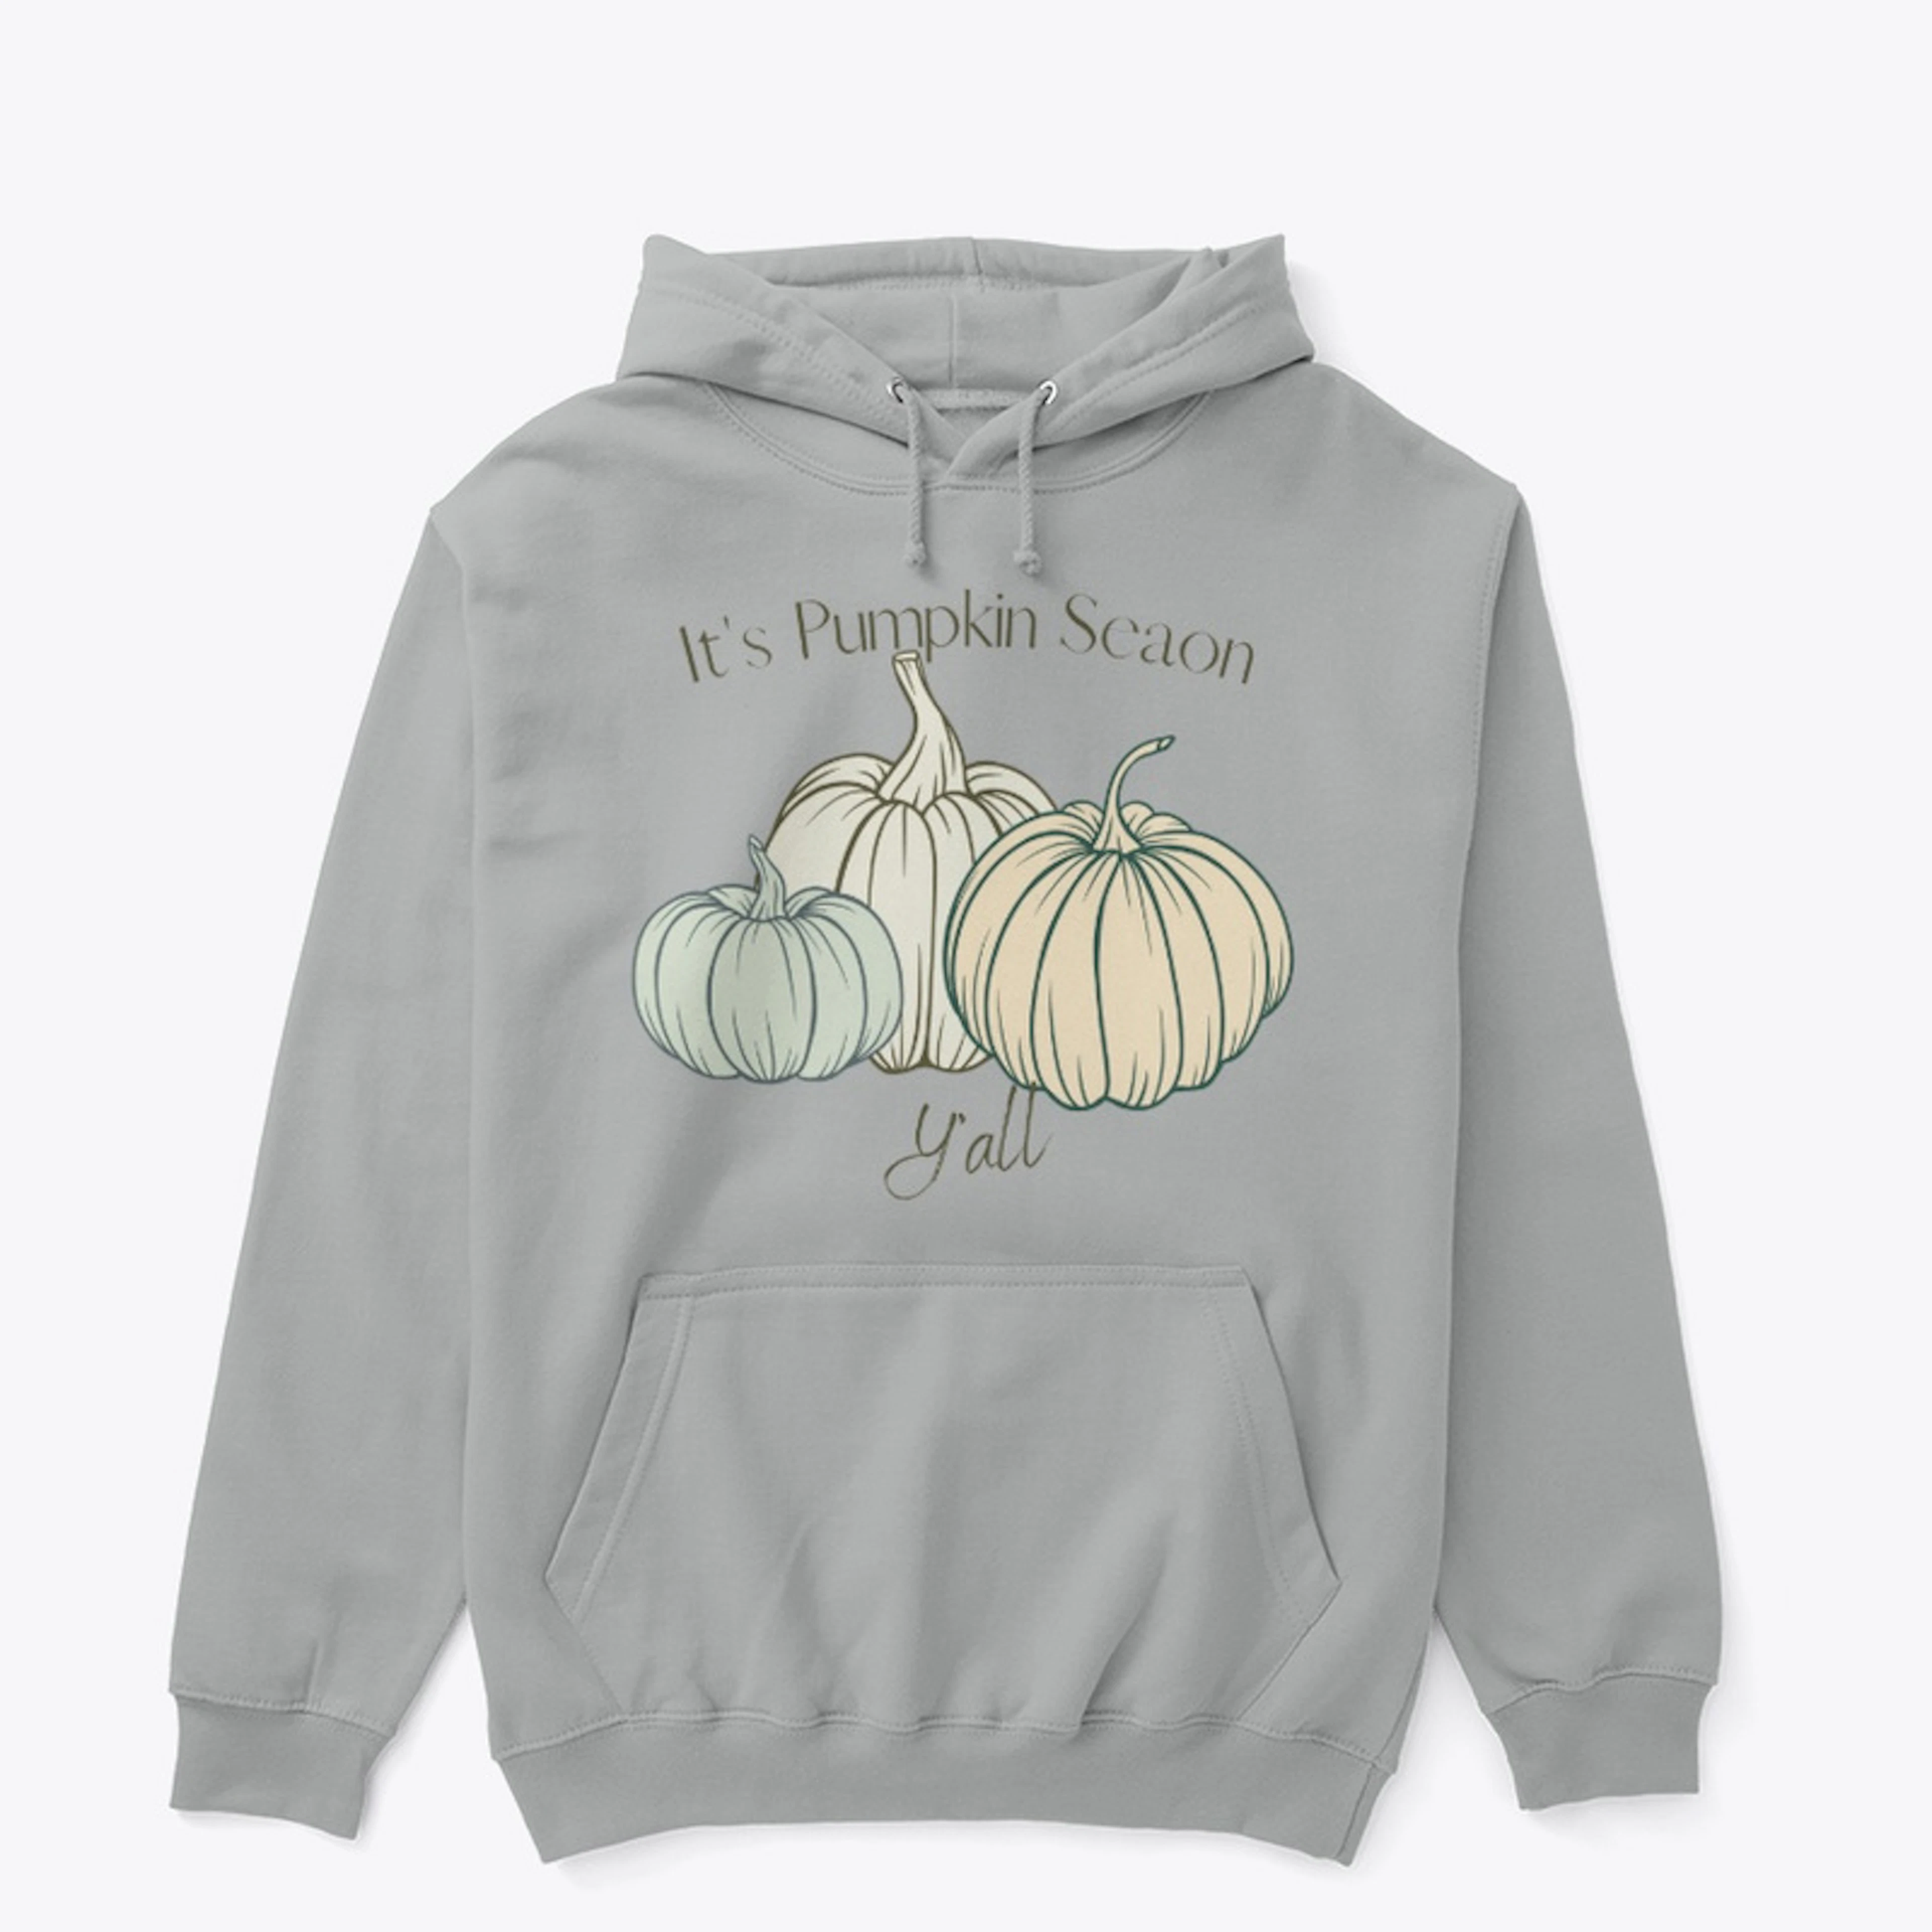 It's Pumpkin Season Y'all